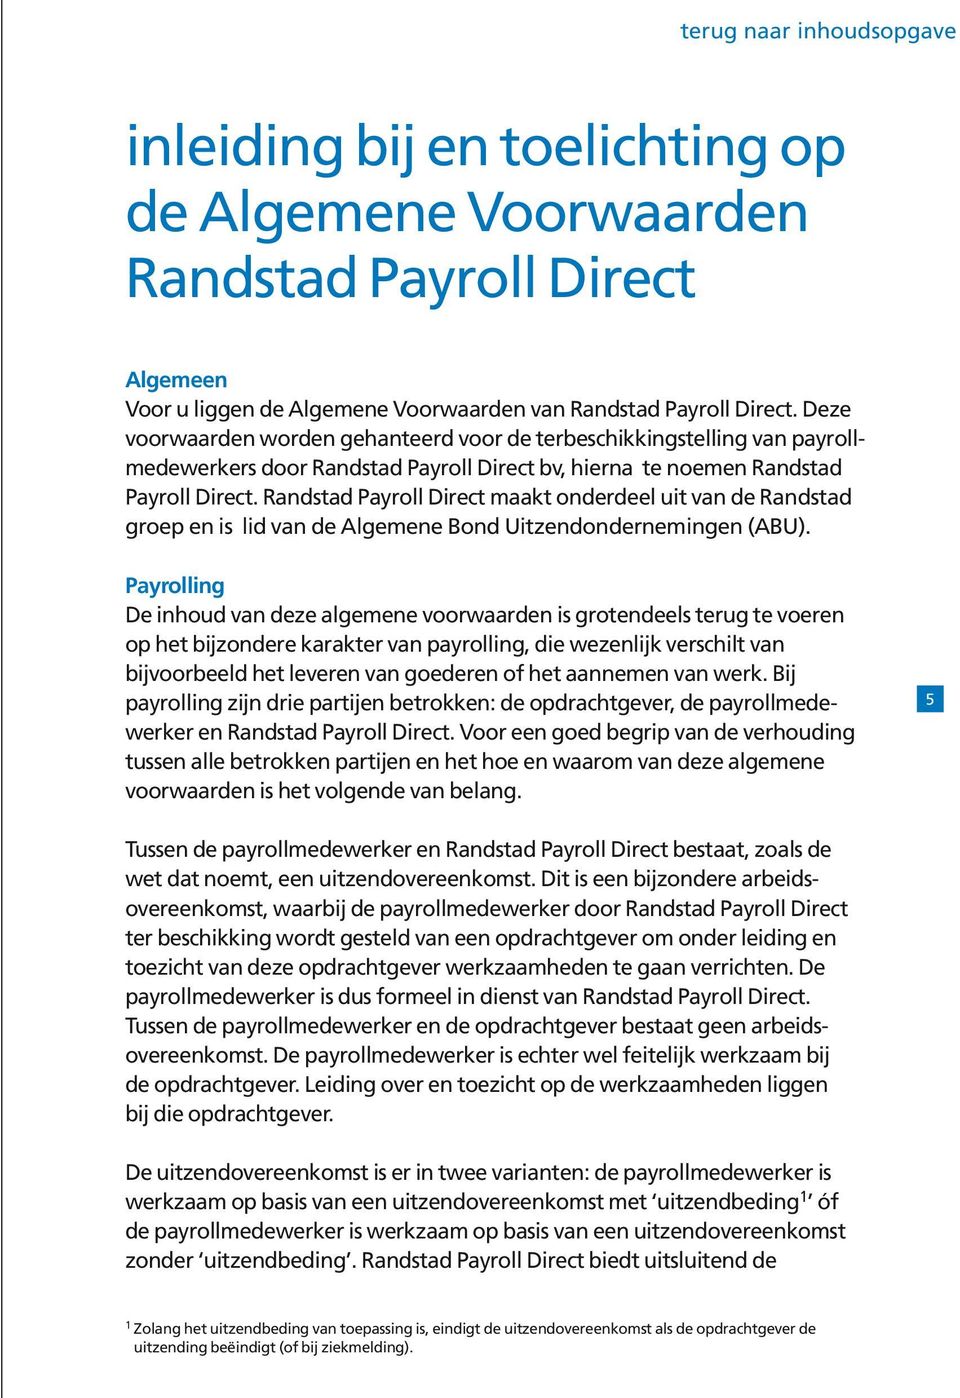 Randstad Payroll Direct maakt onderdeel uit van de Randstad groep en is lid van de Algemene Bond Uitzendondernemingen (ABU).